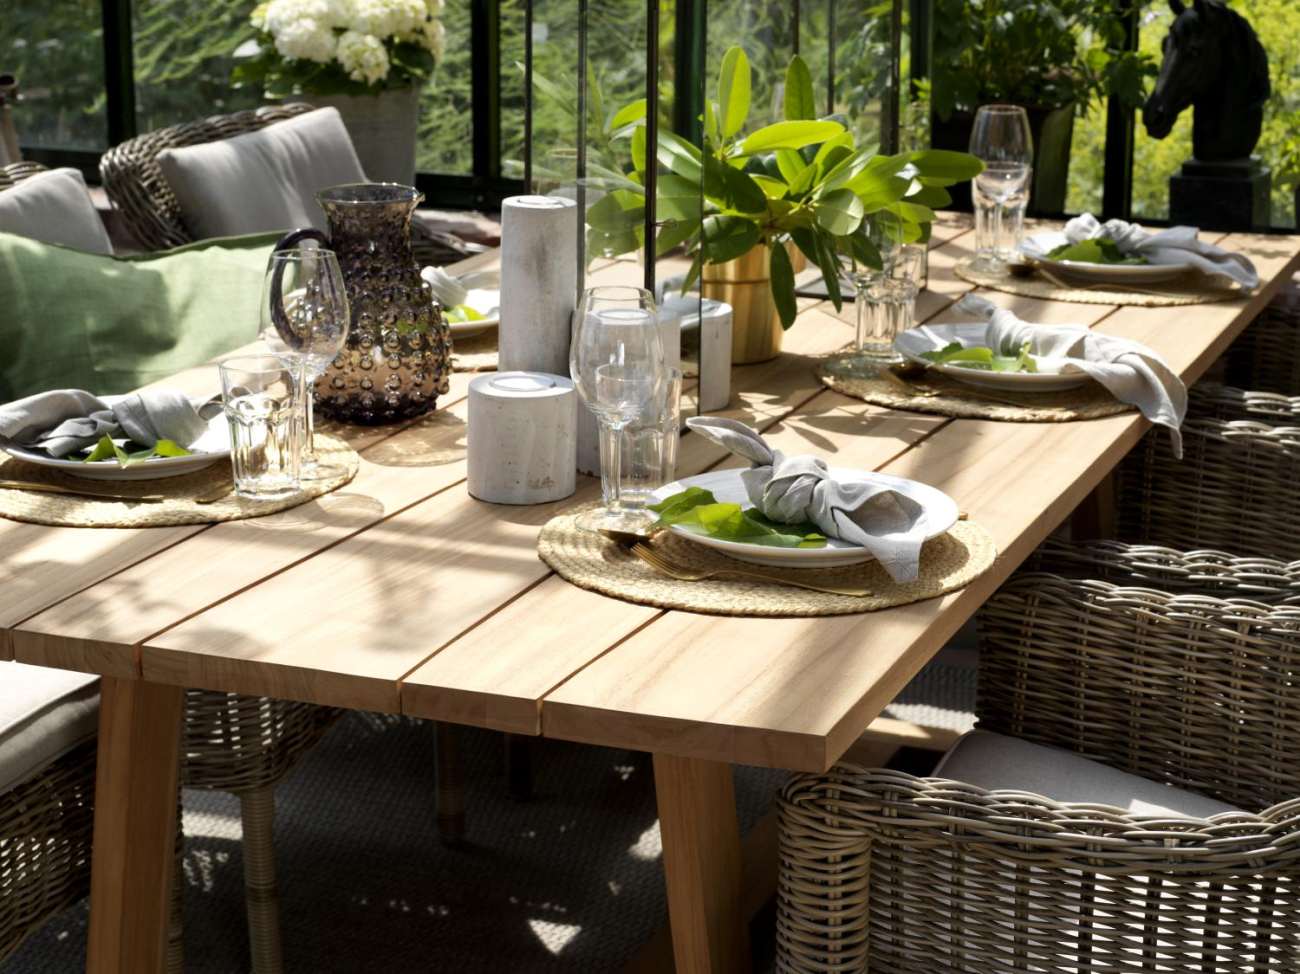 Der Gartenesstisch Laurion überzeugt mit seinem modernen Design. Gefertigt wurde die Tischplatte aus Teakholz und hat eine natürliche Farbe. Das Gestell ist auch aus Teakholz und hat eine natürliche Farbe. Der Tisch besitzt eine Länge von 230 cm.